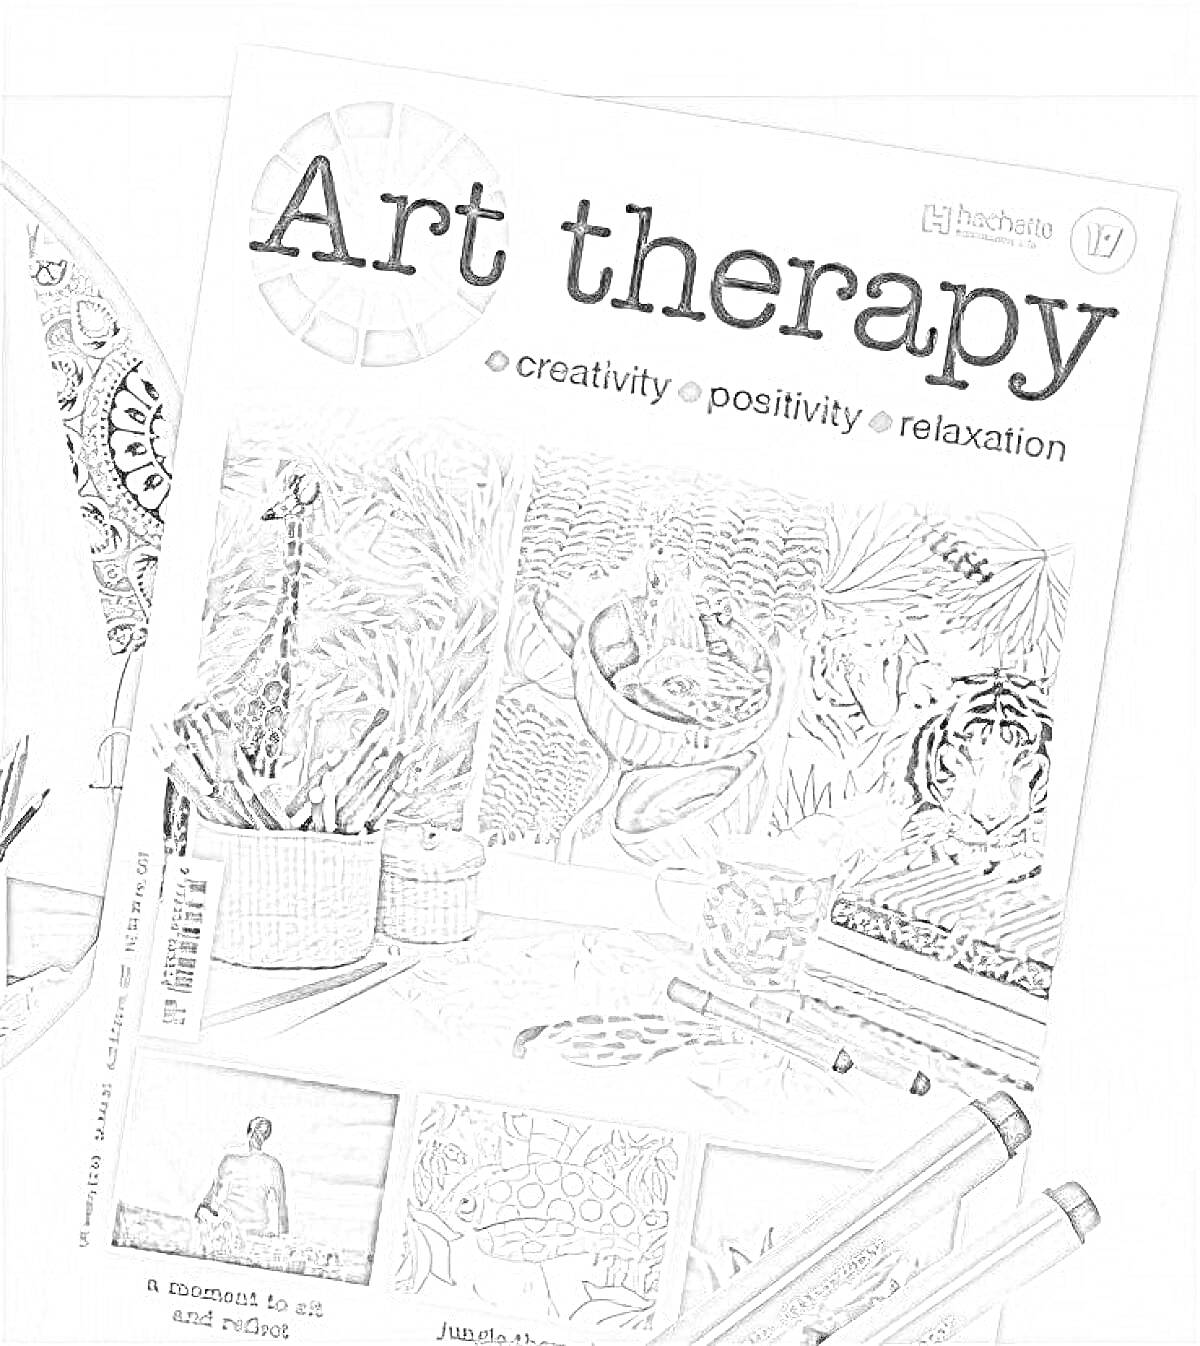 Раскраска Art therapy от hachette, рисунки растений и горы, 3 фломастера, девушка на берегу, кактусы в горшках